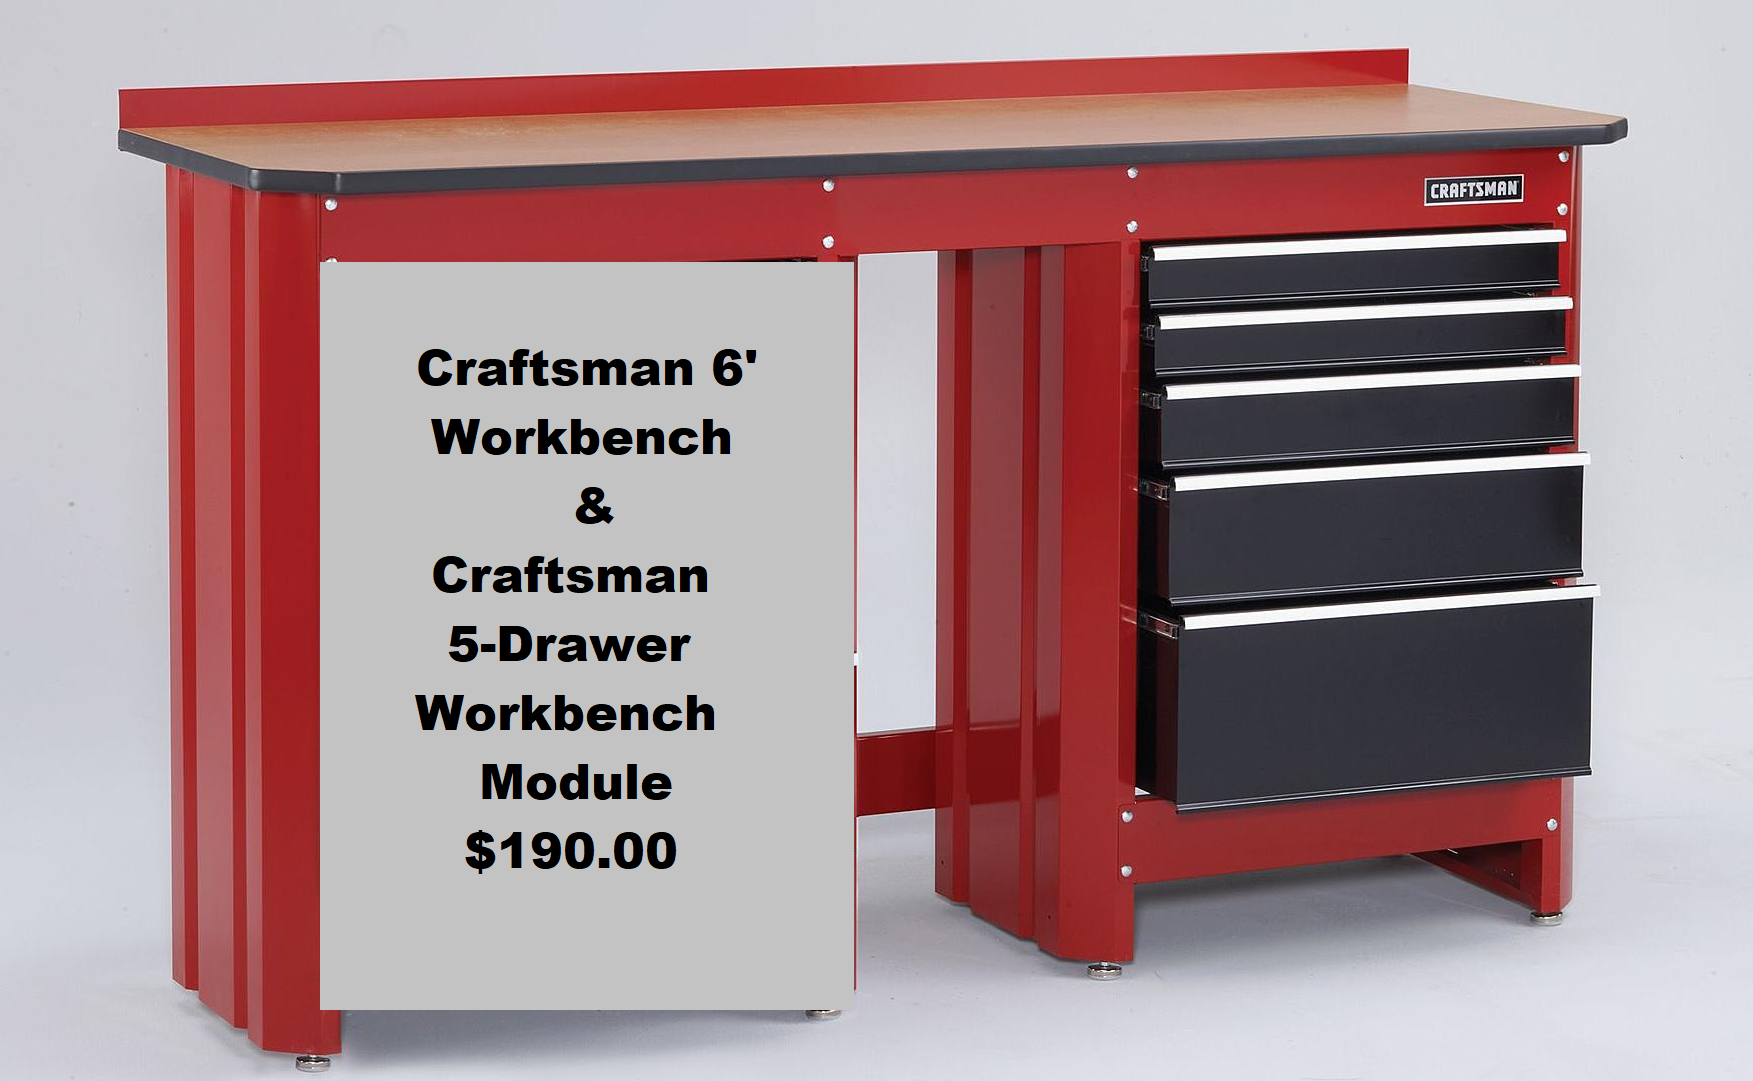 NEW Craftsman 6' Workbench & Craftsman 5-Drawer Workbench Module